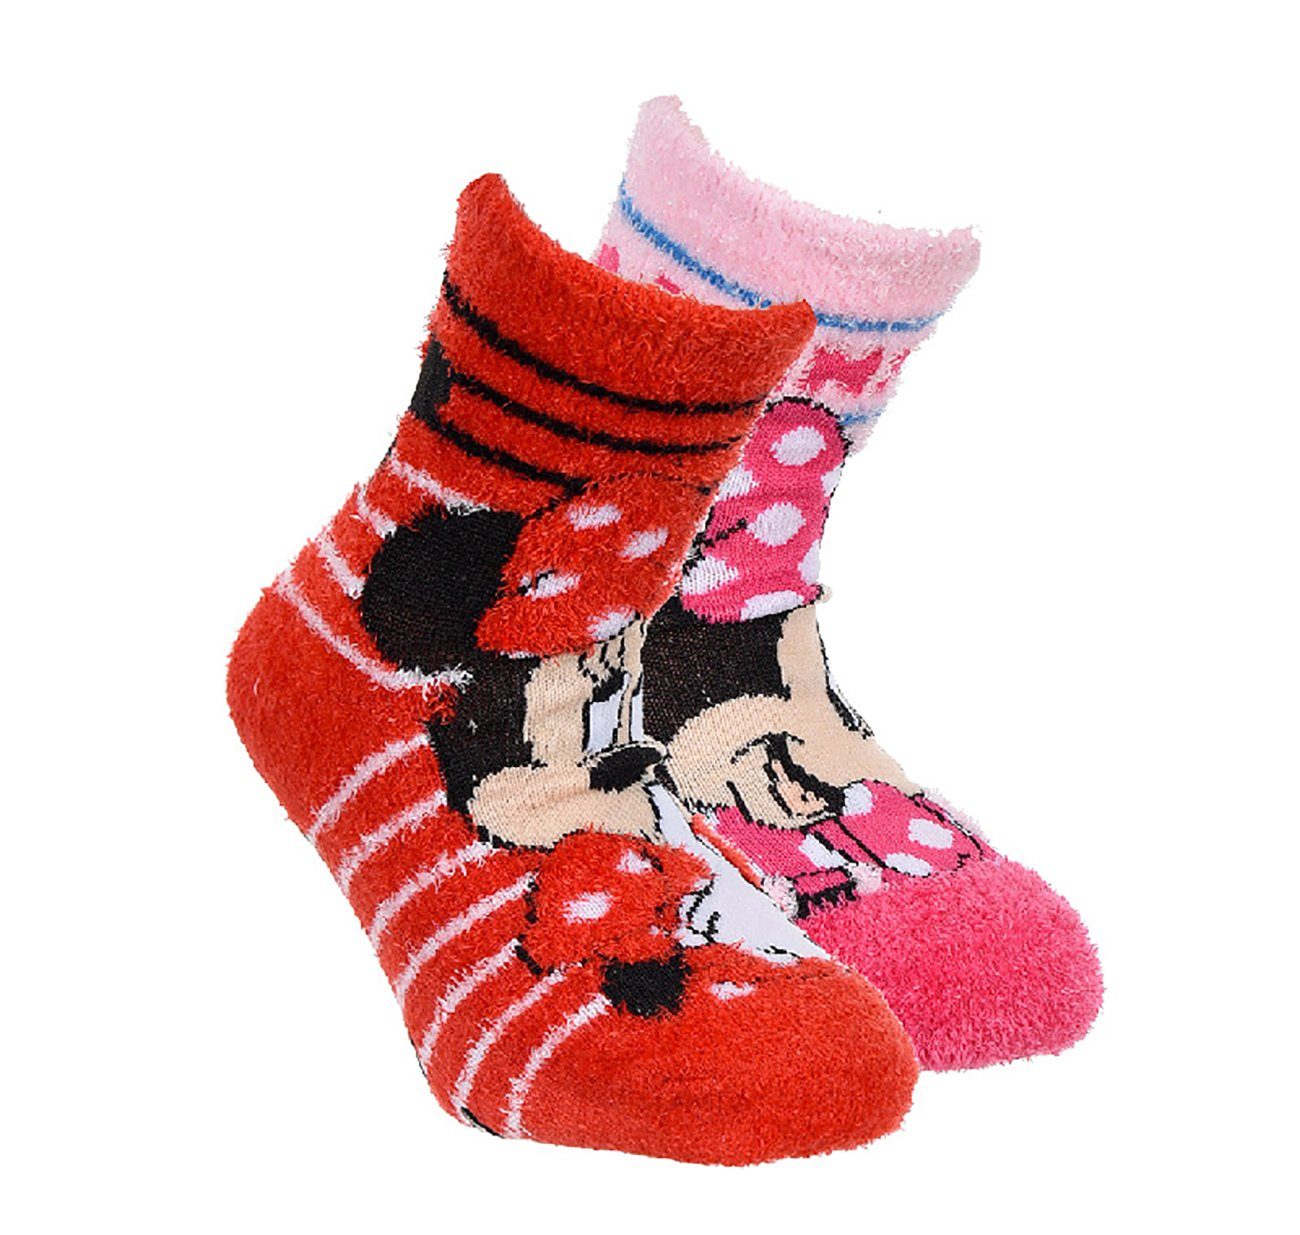 Disney Minnie Mouse Socken Kinder Antirutsch-Socken, 2er Pack, rot-pink, 1 Paar  mit Minnie Mouse Motiv in pink